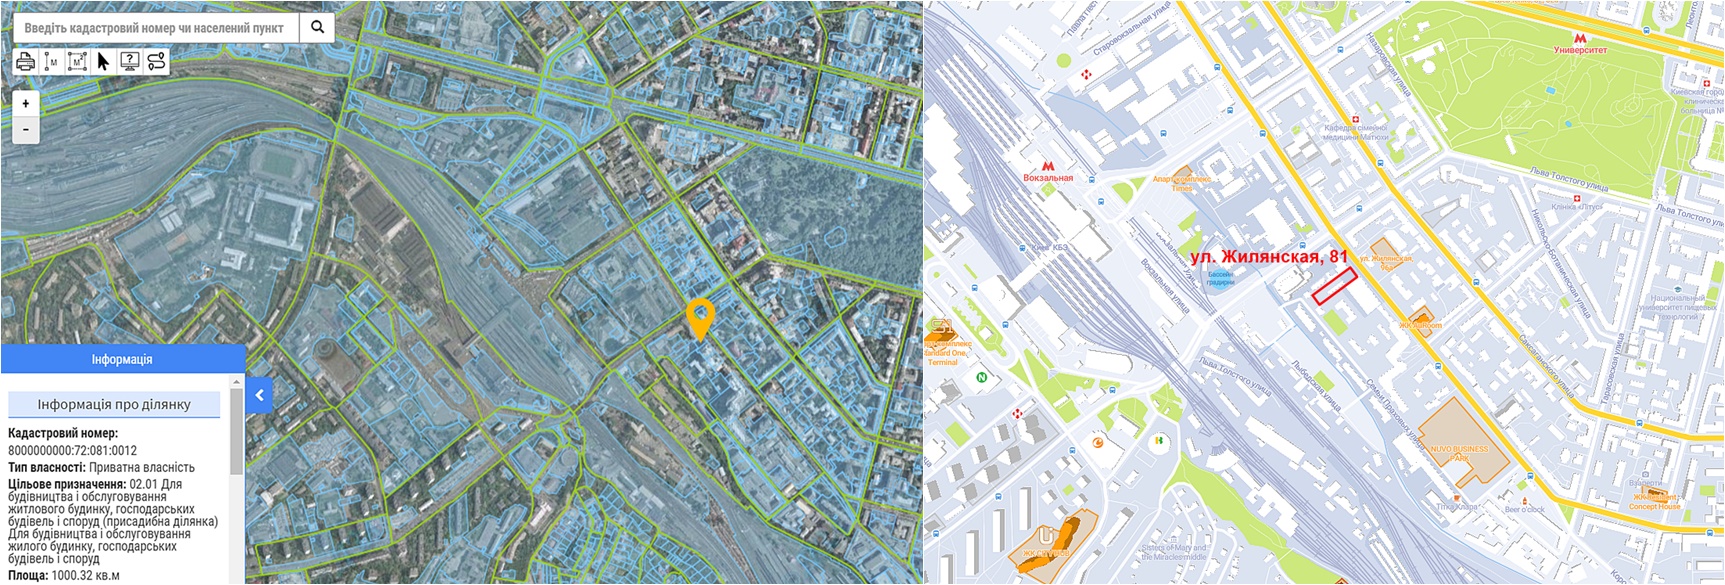 Проект многофункционального ЖК по ул. Жилянская, 81 данные кадастра и на карте